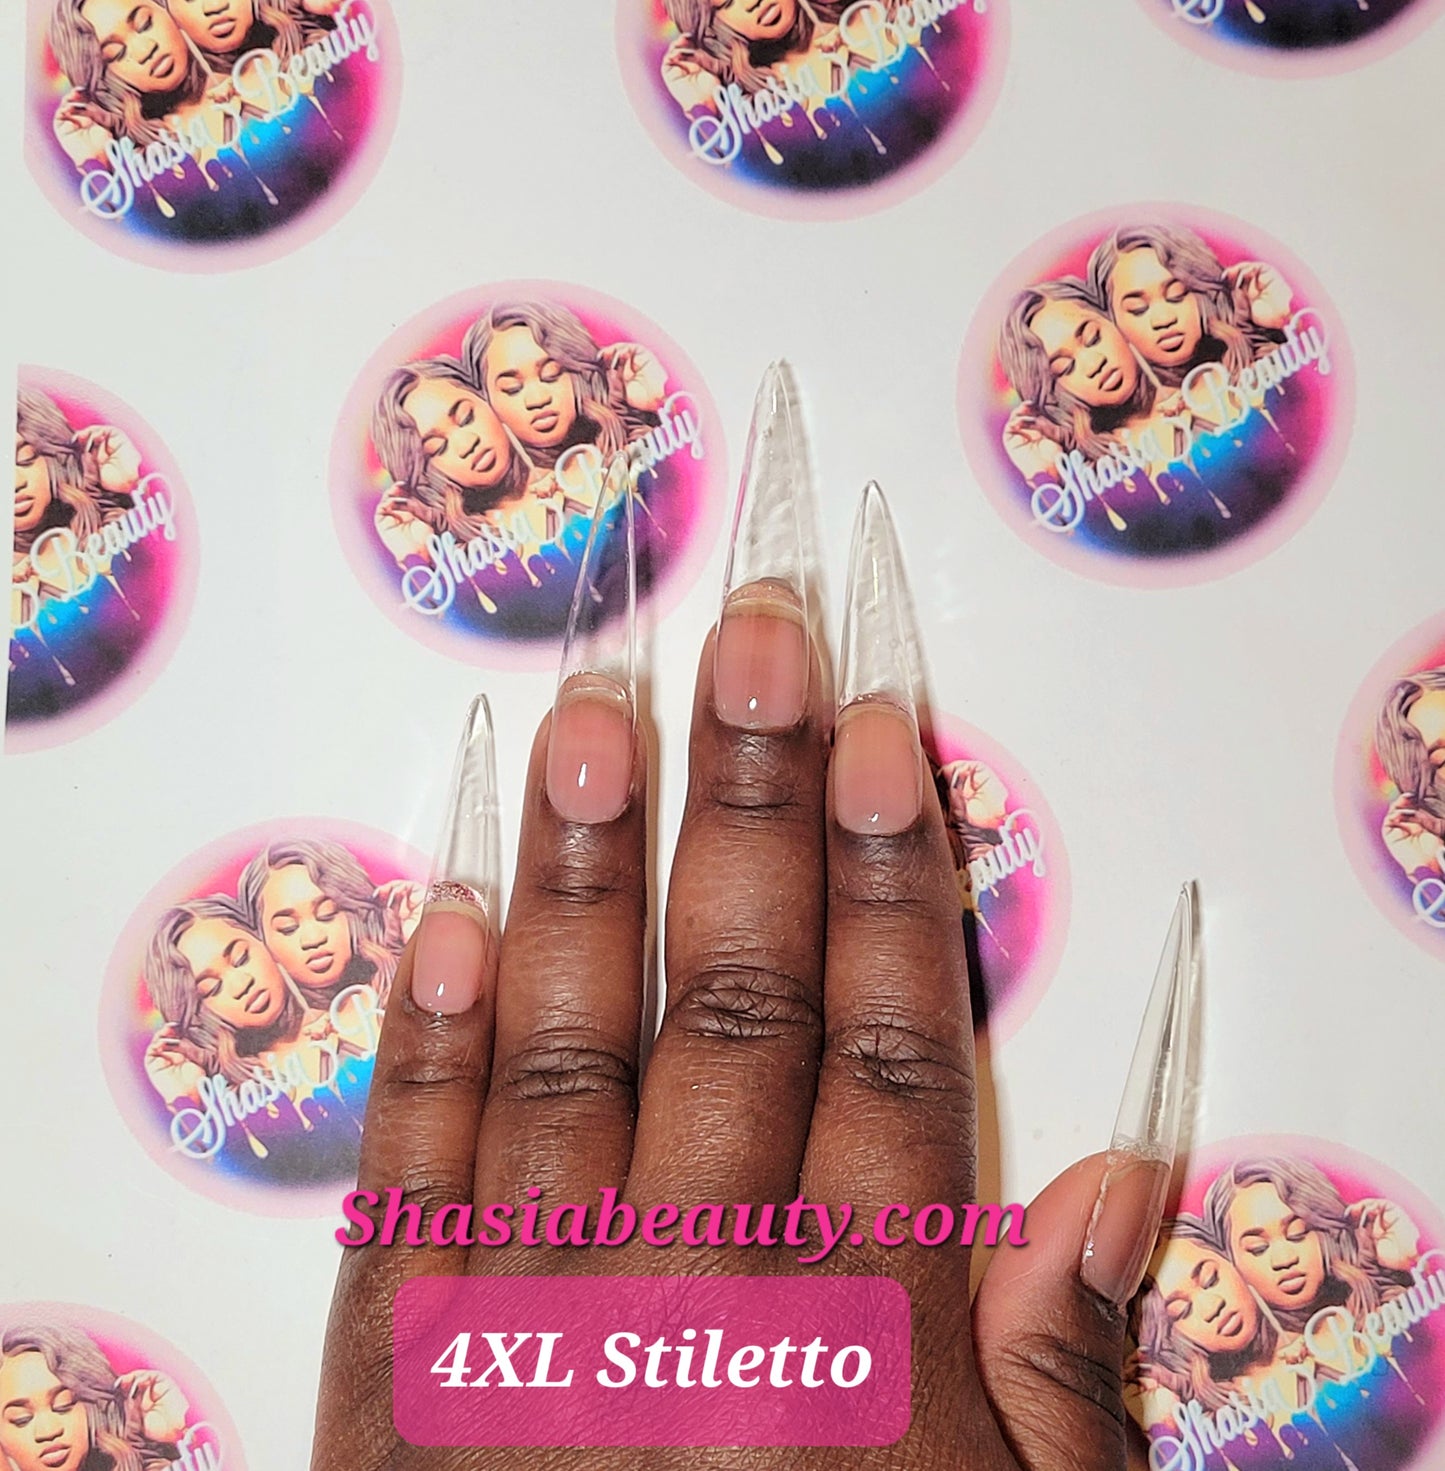 4XL Stiletto Full Cover Nails